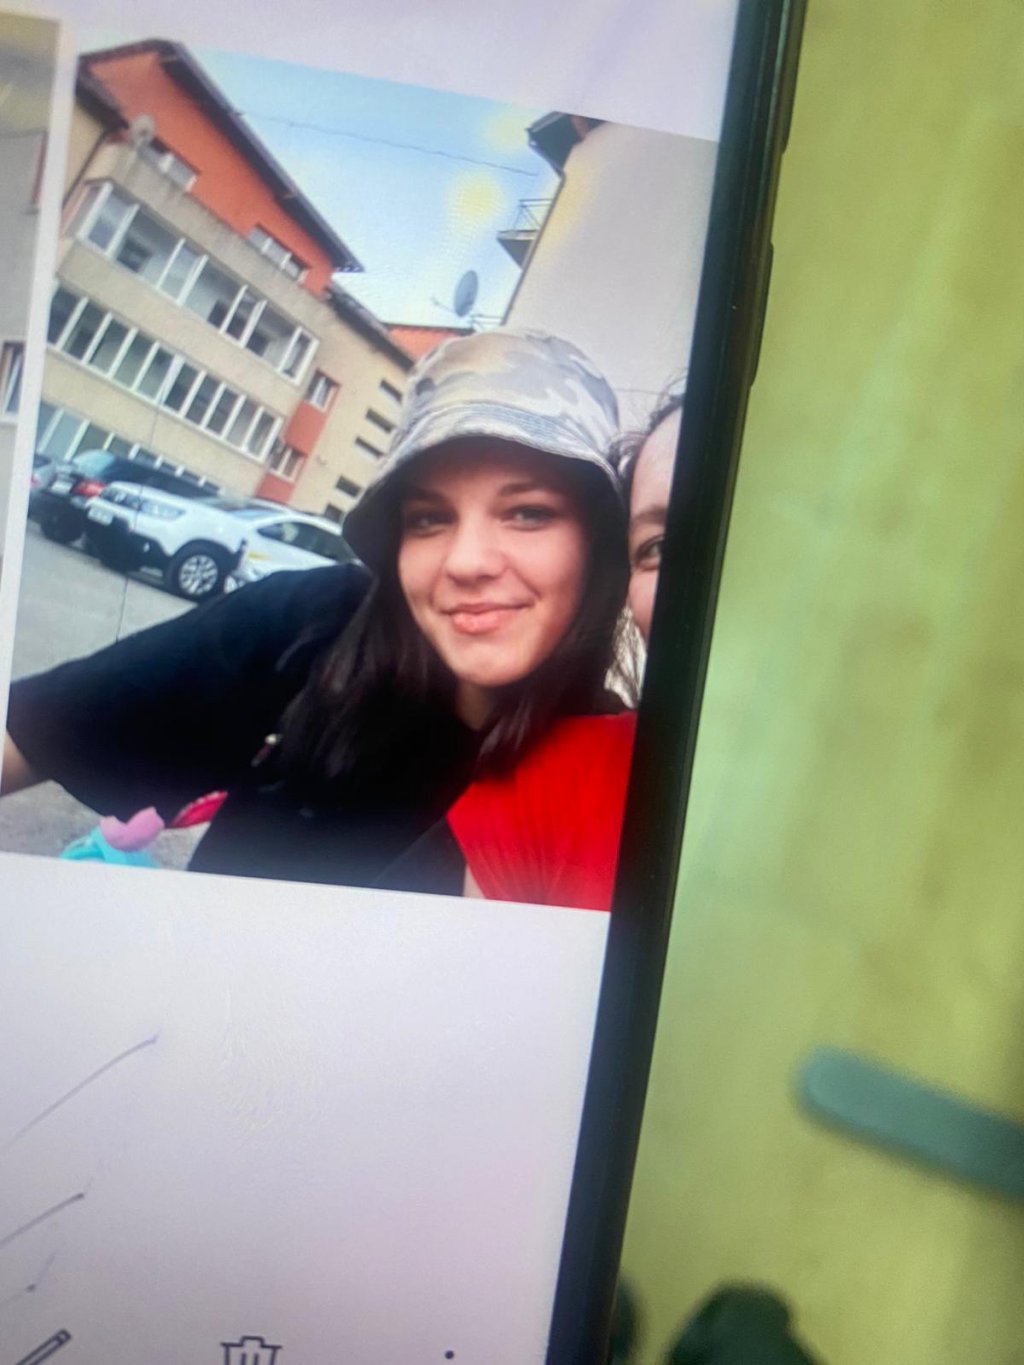 Unde a fost găsită, de data aceasta, adolescenta de 15 ani din Cluj. Fata a fugit de acasă de două ori într-o săptămână